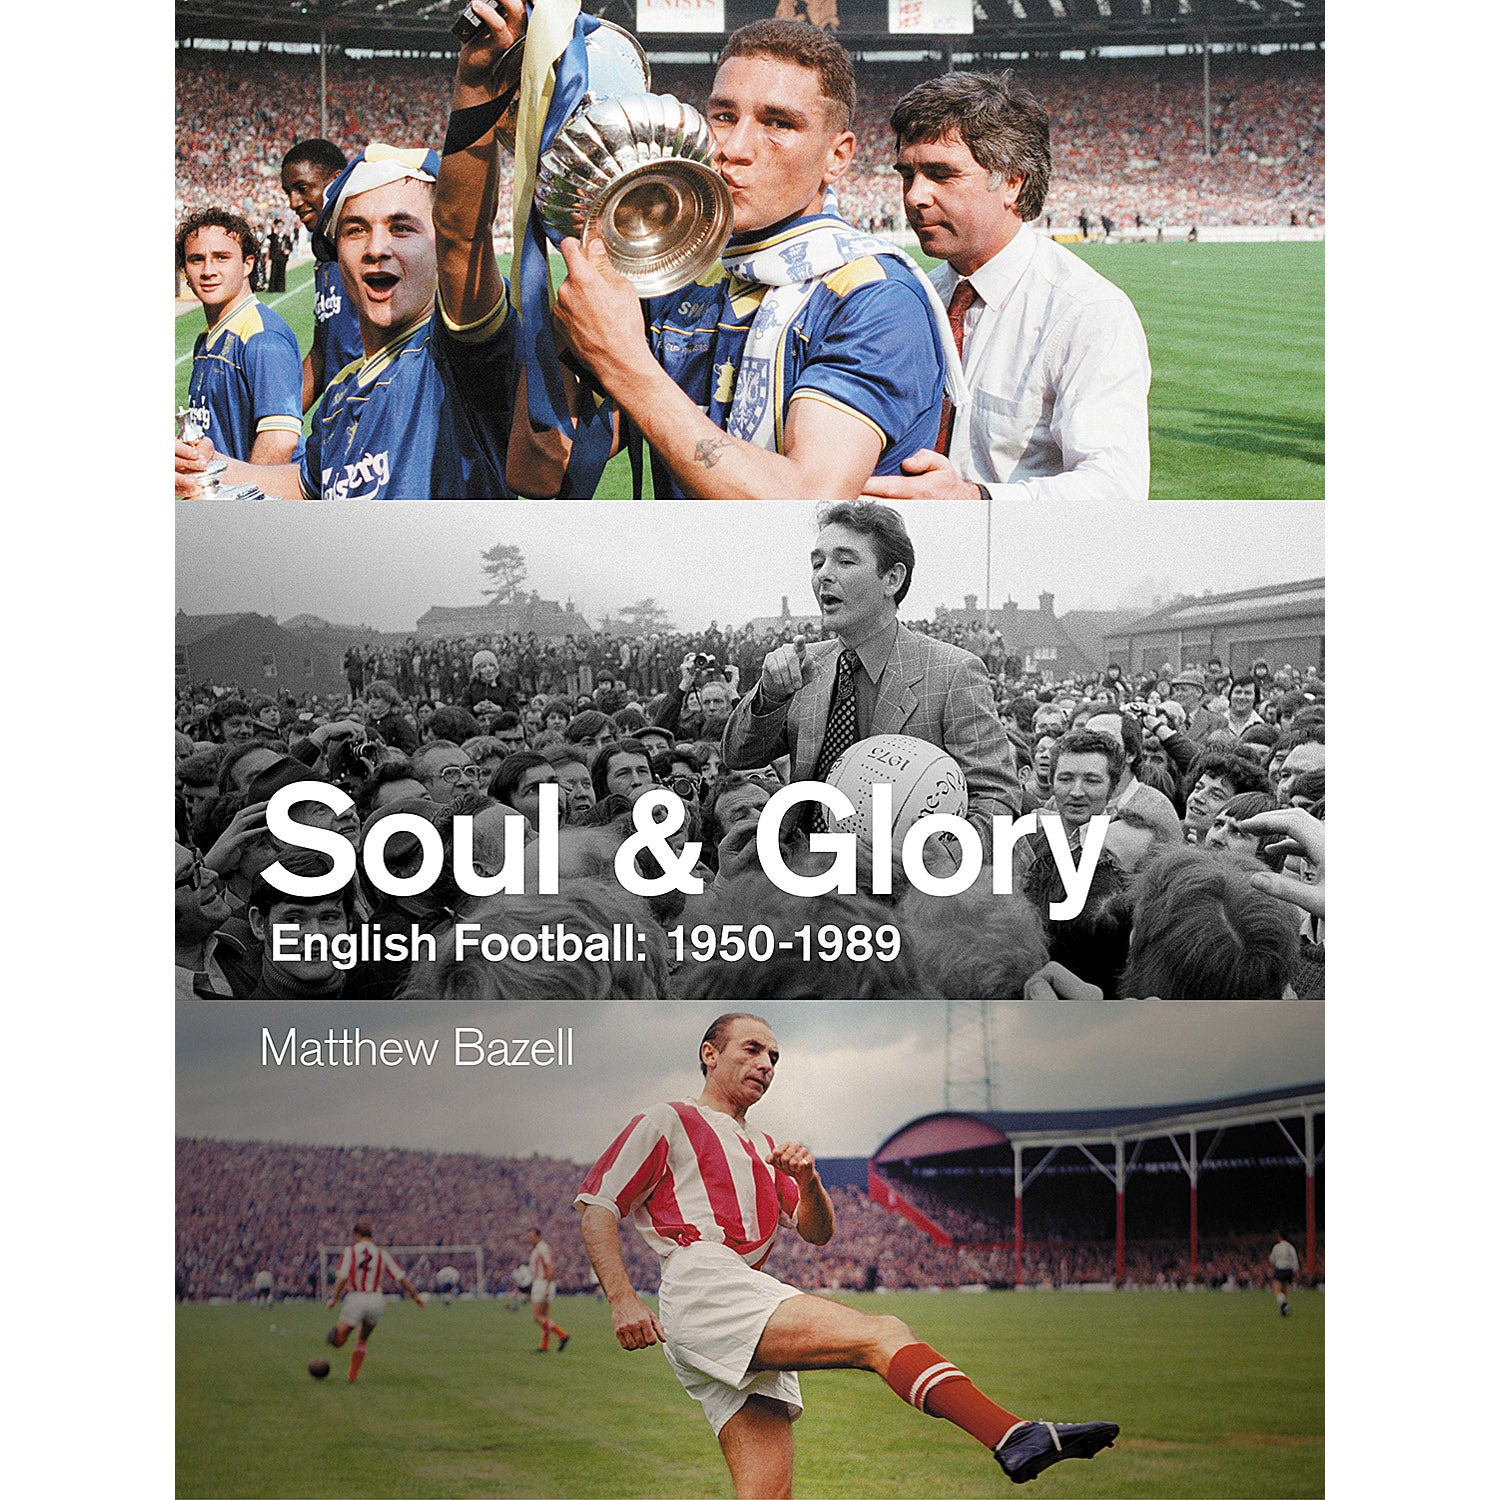 Soul & Glory – English Football: 1950-1989